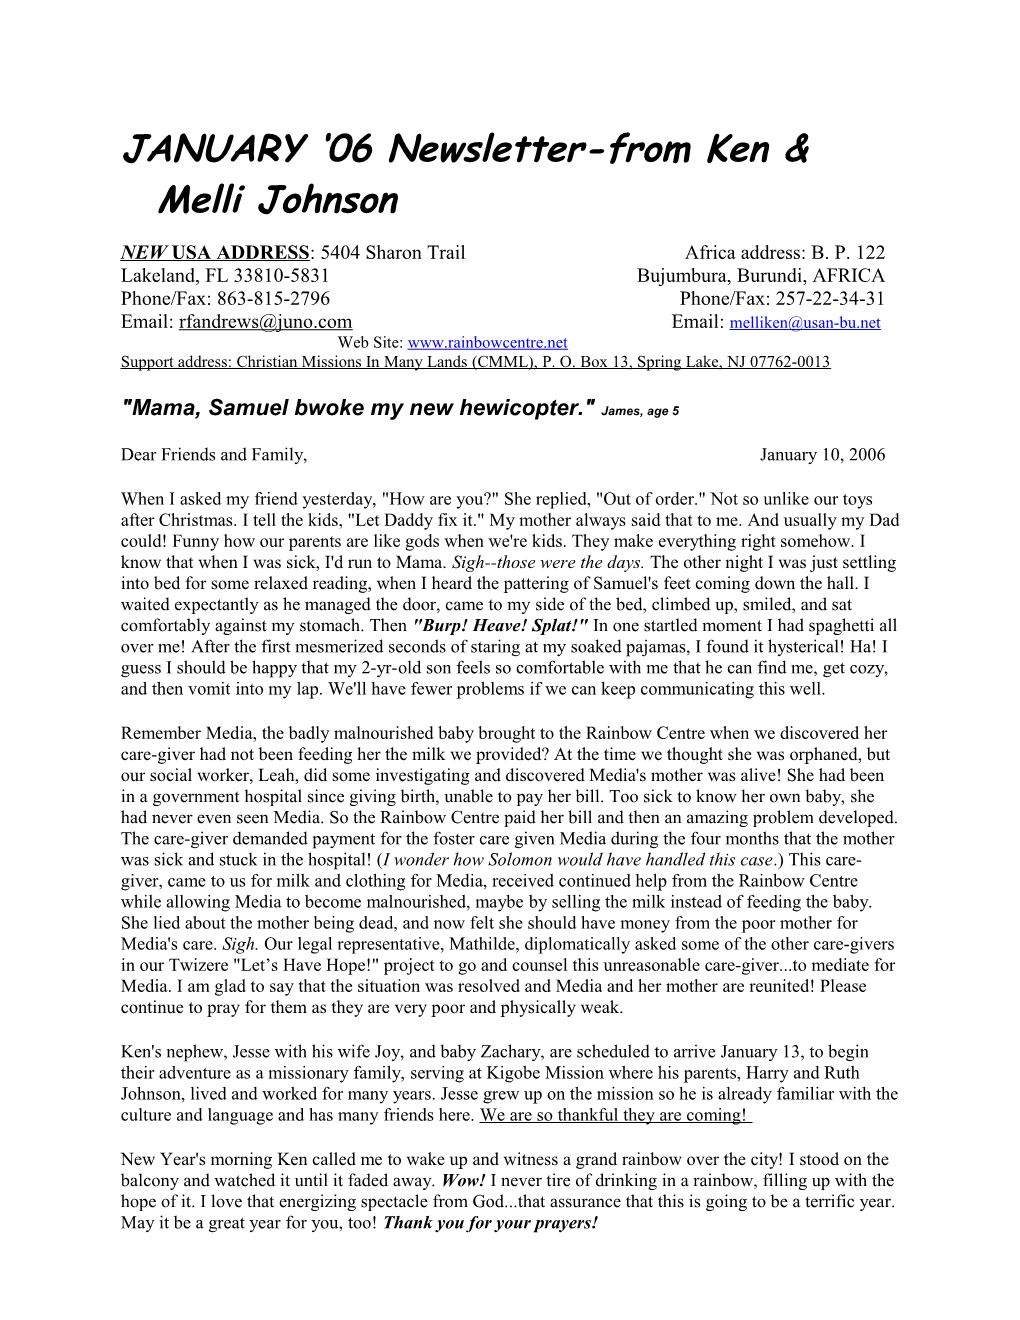 JANUARY 06 Newsletter-From Ken & Melli Johnson